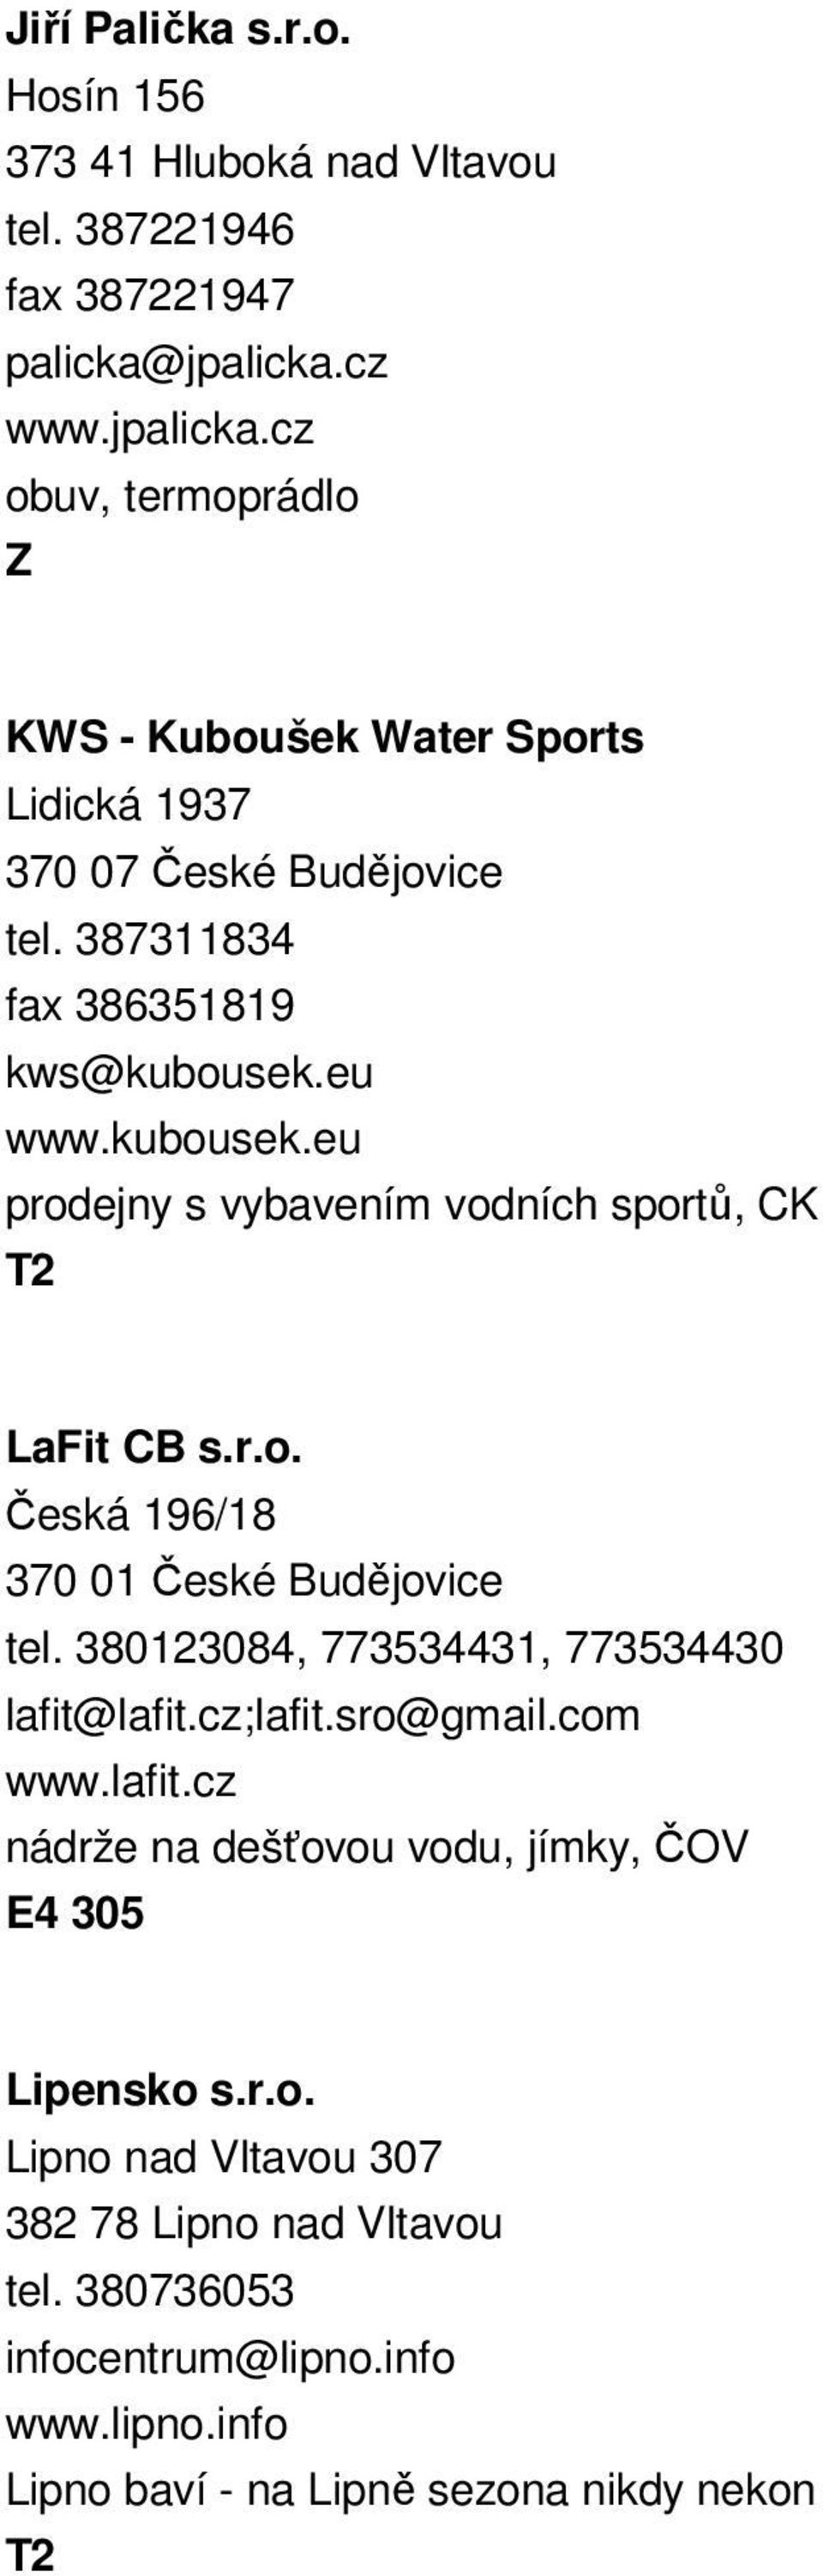 kubousek.eu prodejny s vybavením vodních sportů, CK LaFit CB s.r.o. Česká 196/18 tel. 380123084, 773534431, 773534430 lafit@lafit.cz;lafit.sro@gmail.